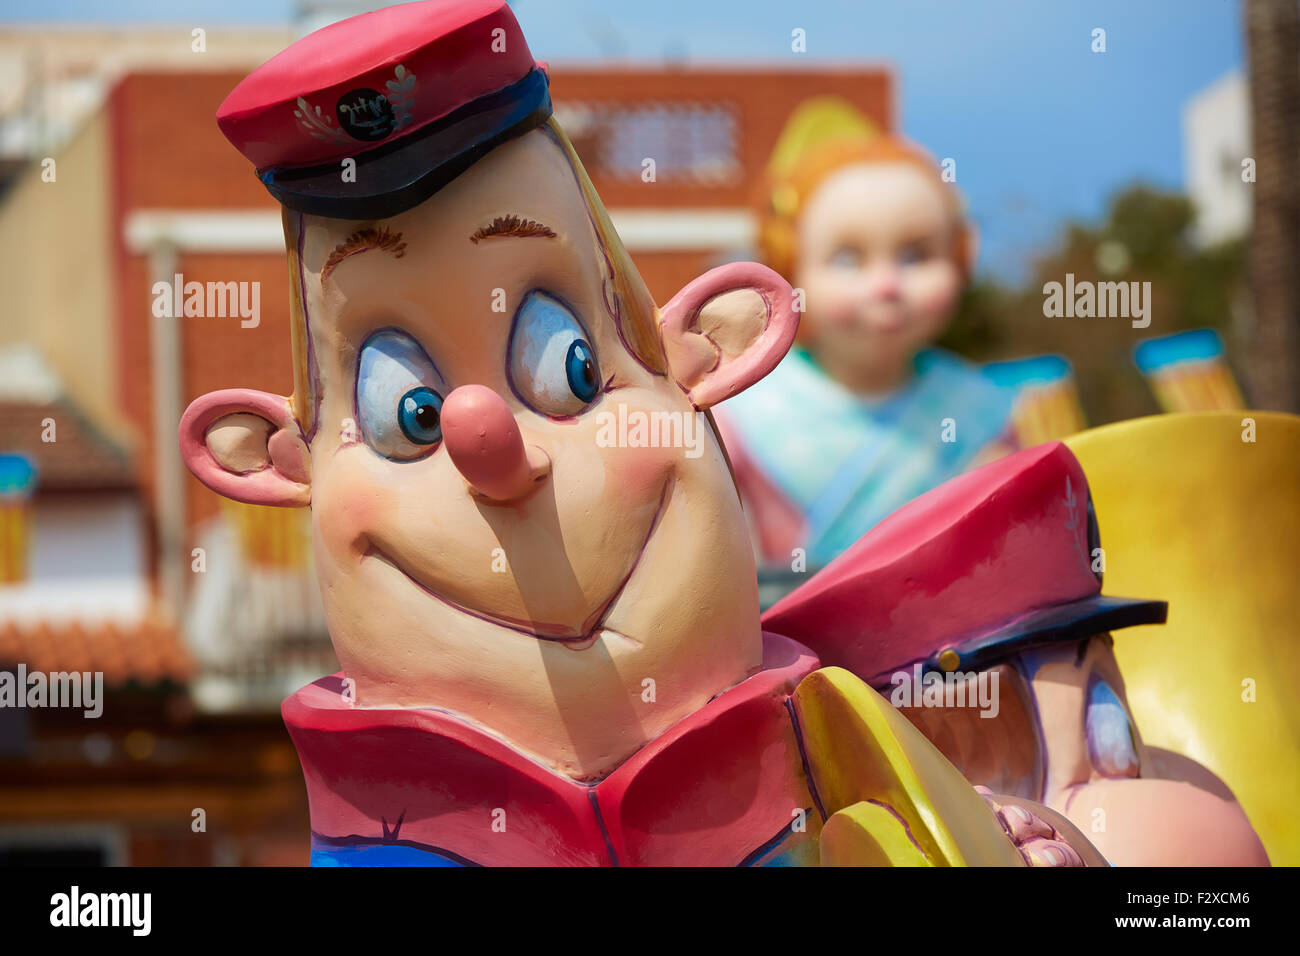 Fallas-Fest-Figuren in Valencia traditionelle Feier in Spanien Stockfoto